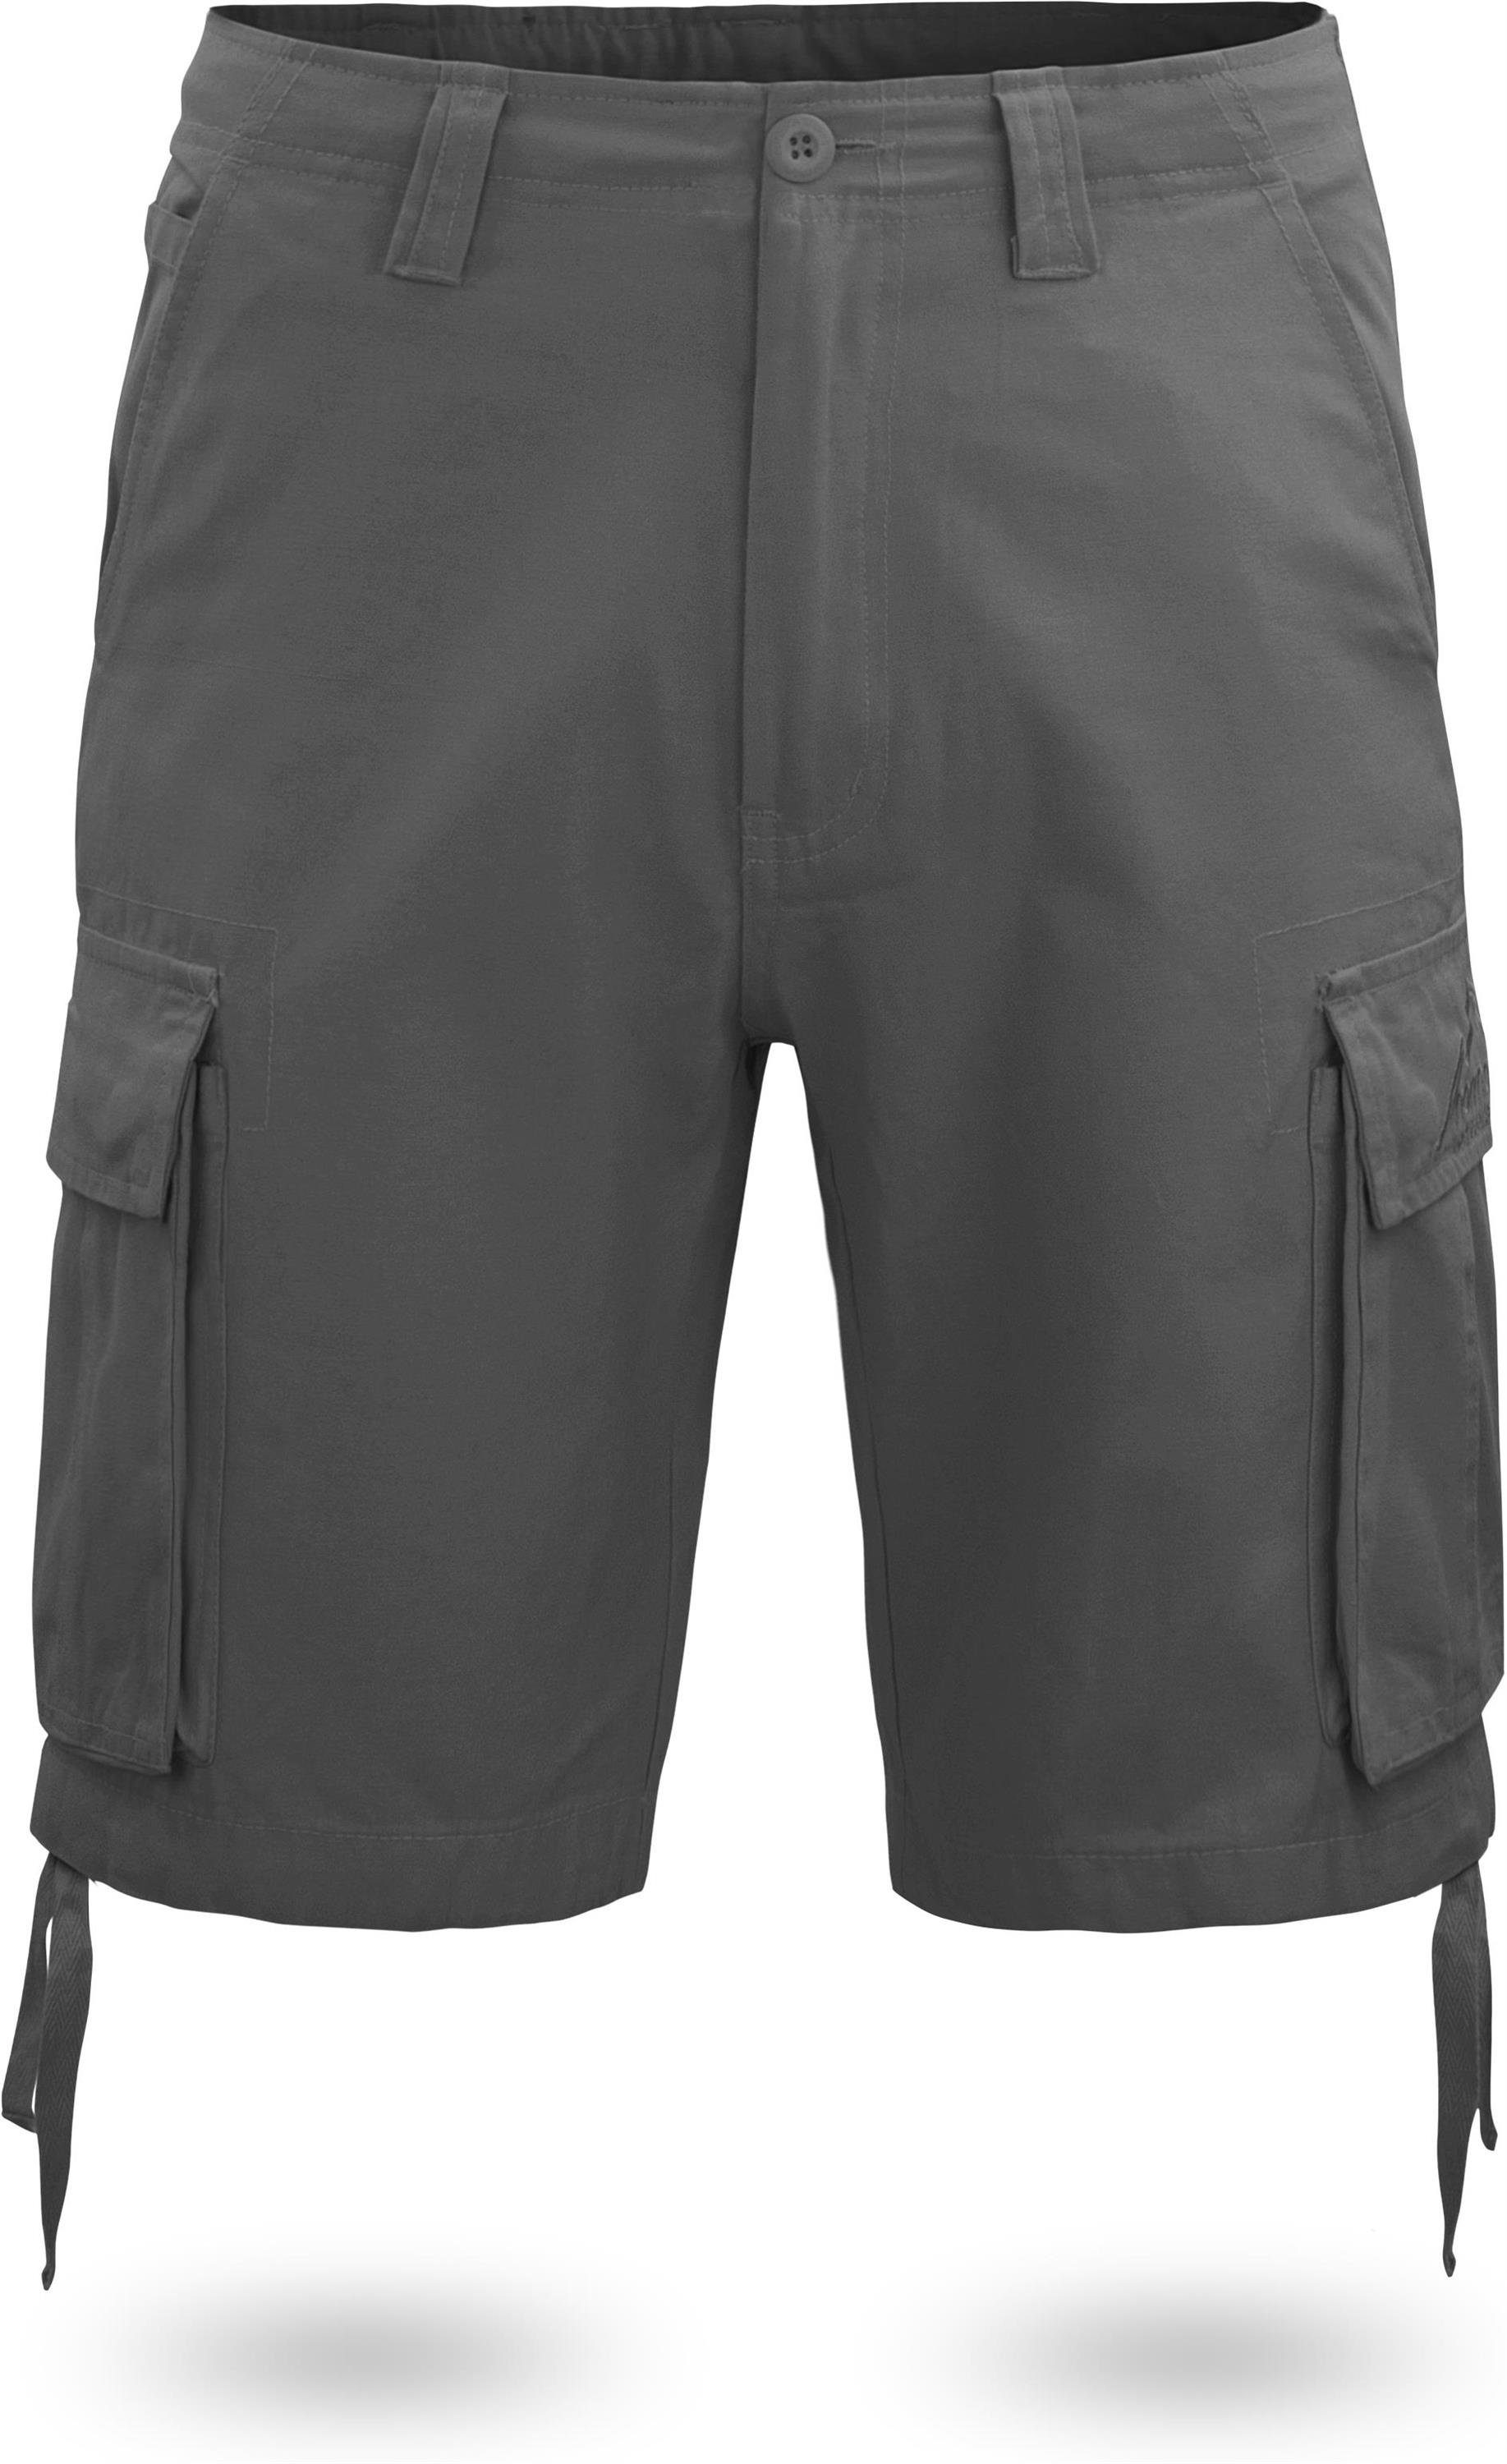 normani Bermudas Herren Shorts Kalahari Sommershorts Vintage Shorts Bio-Baumwolle kurze Anthrazit Cargotaschen 100% mit aus